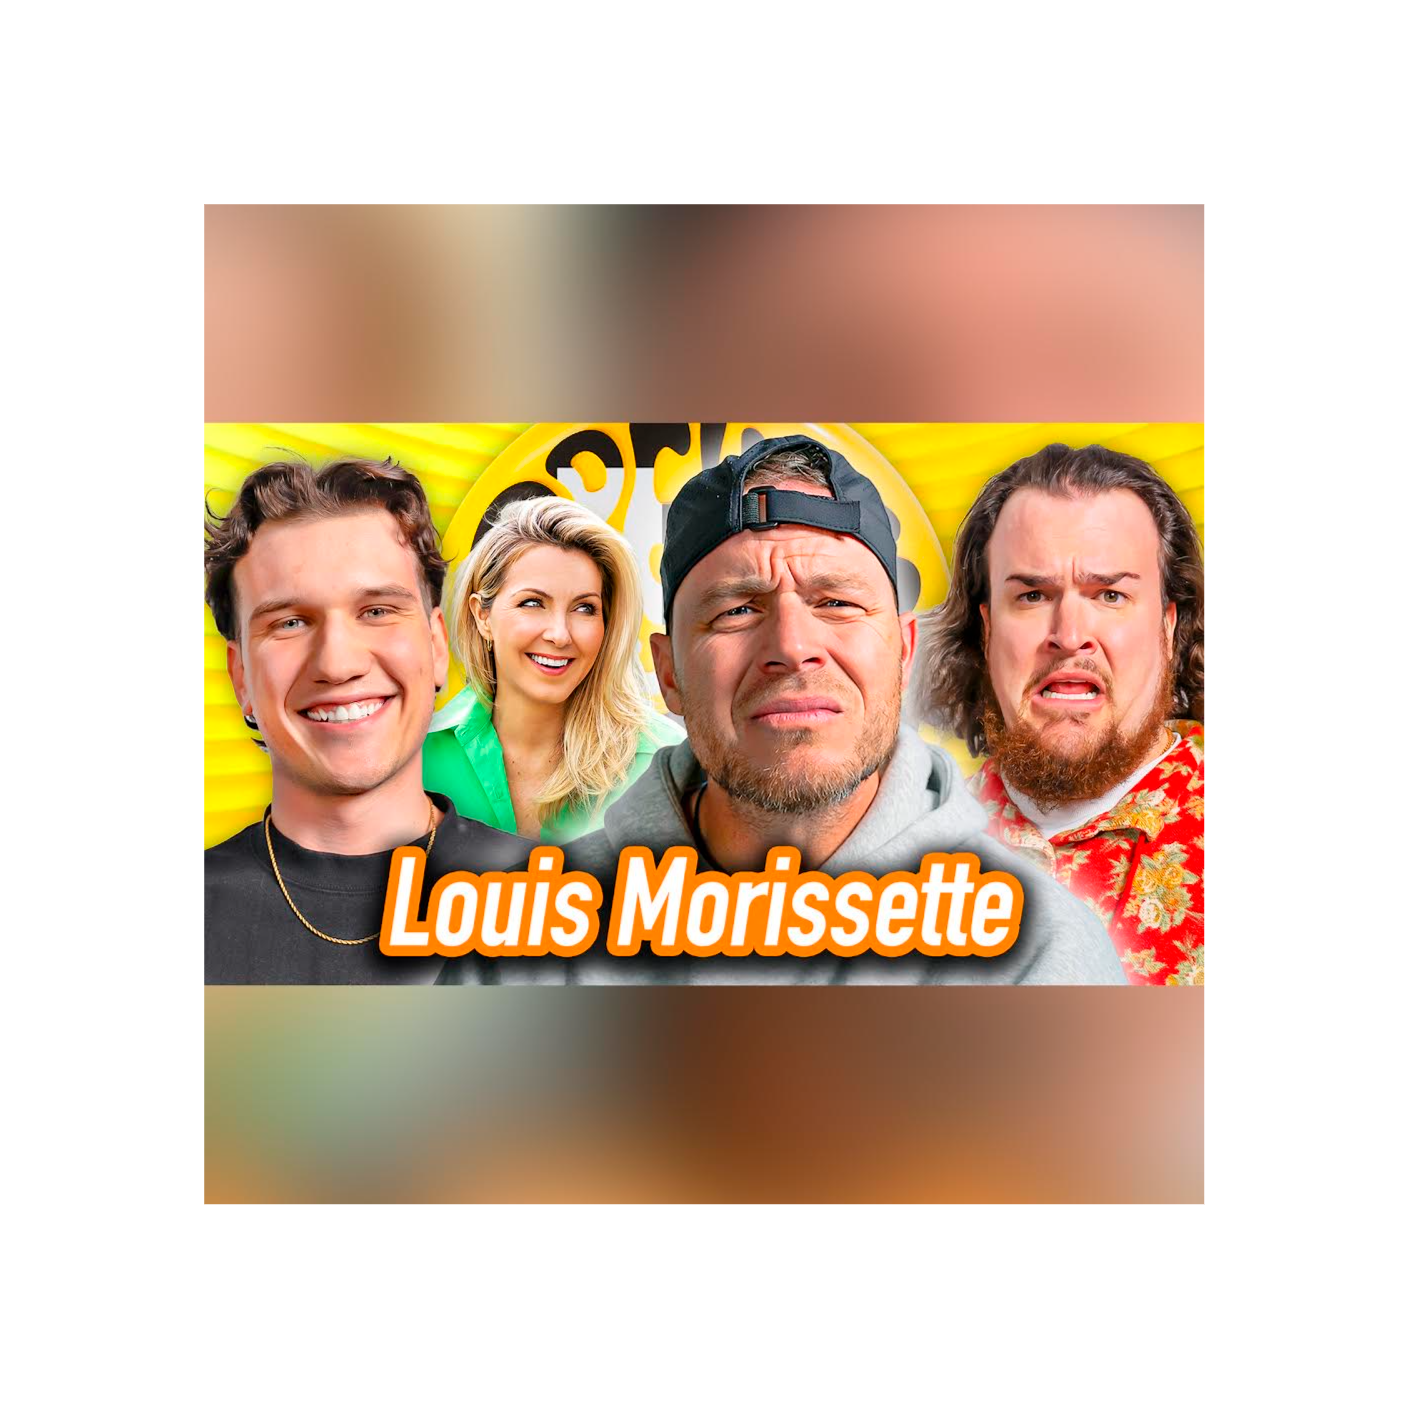 Louis Morissette sur ses controverses, l’argent & il cruise la mère du Beau-frère!?